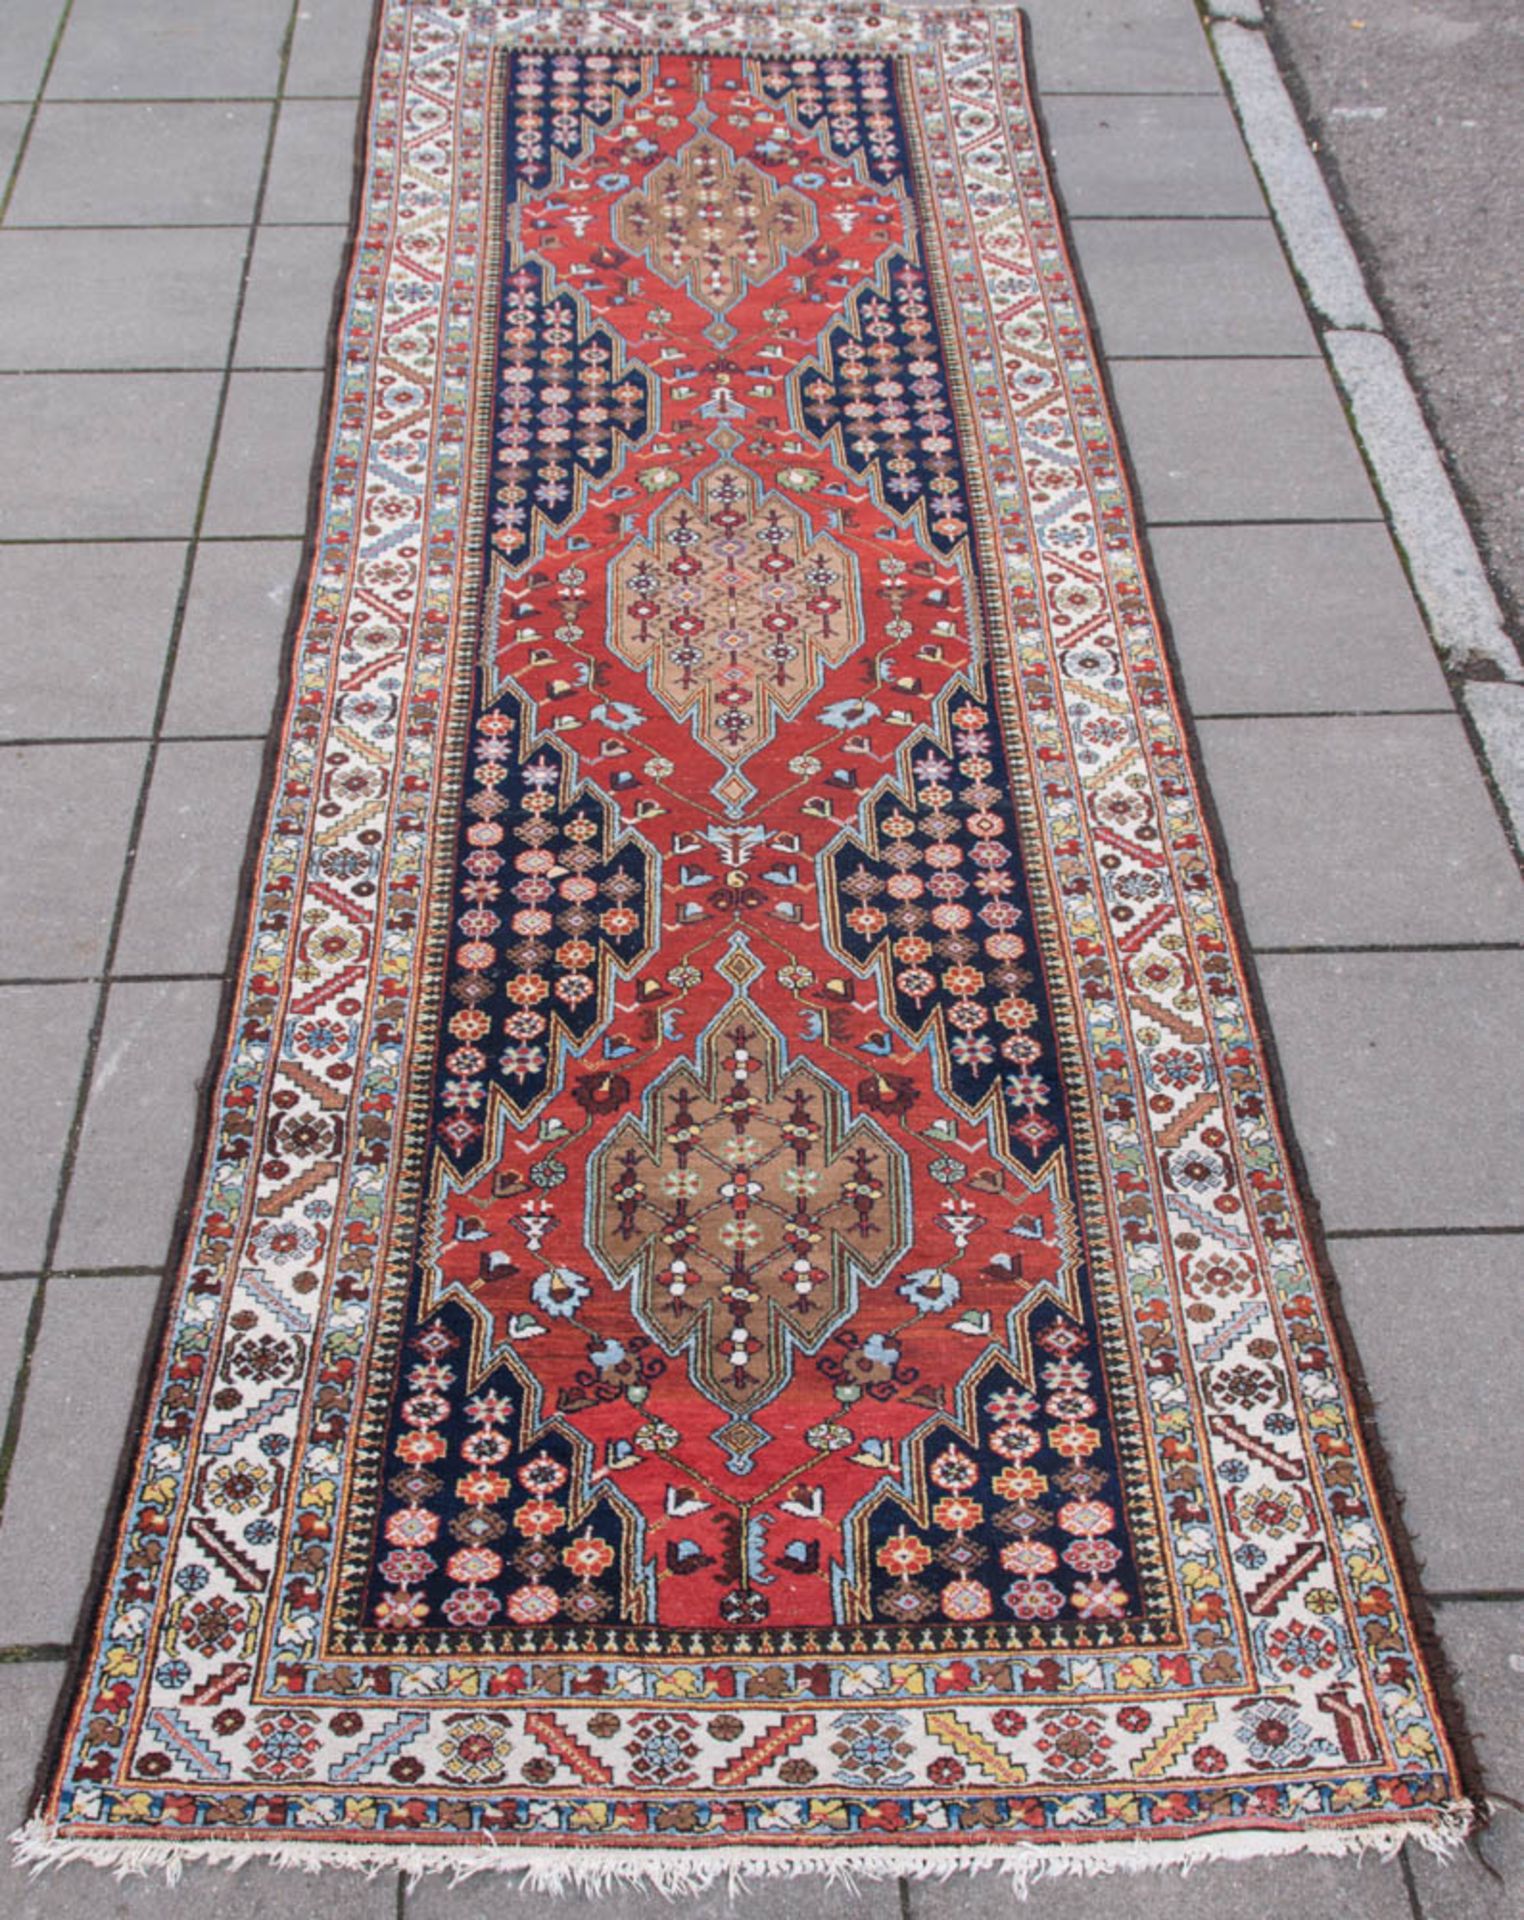 Läufer Teppich, Baumwolle.Ornamenrale und florale Muster.420 x 150 cm.